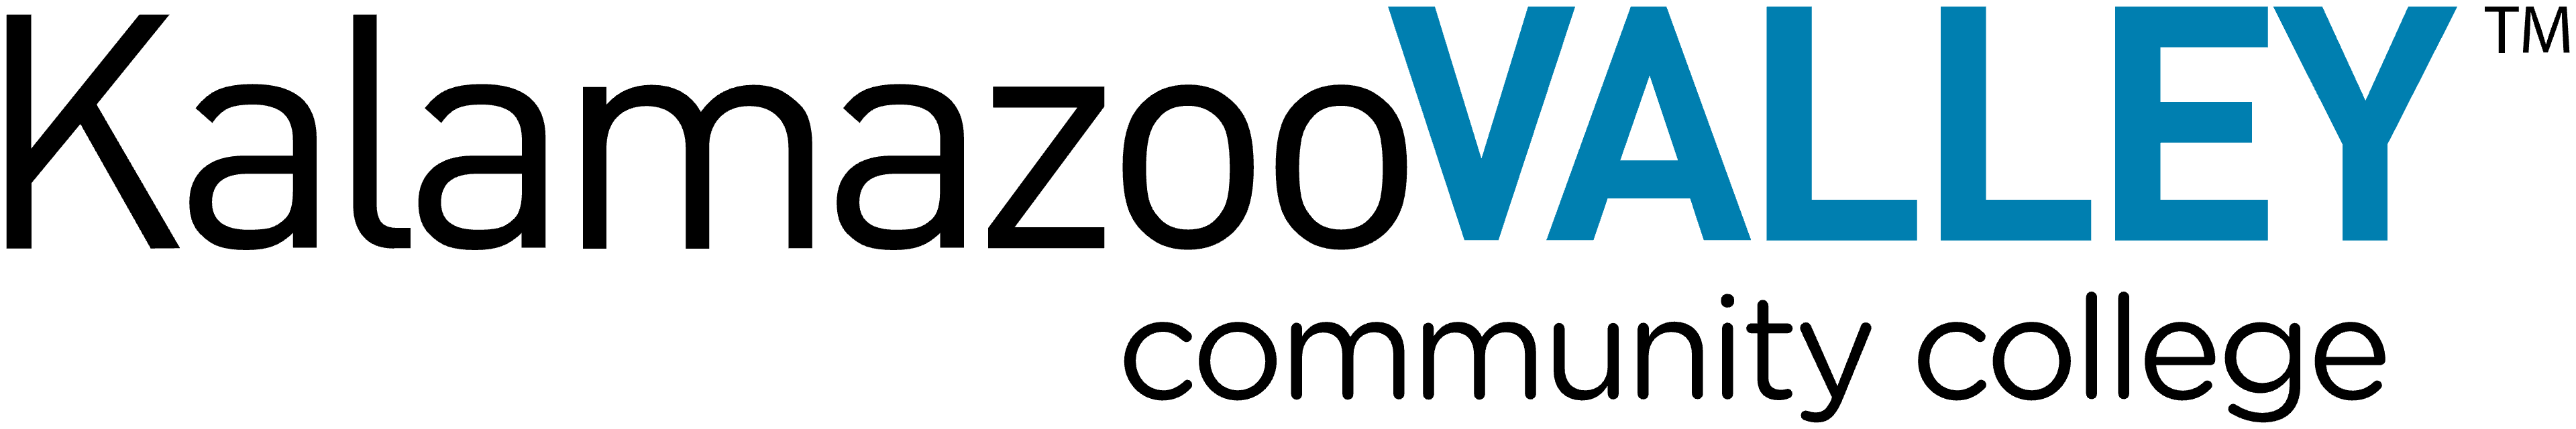 kalamazoo community college logo